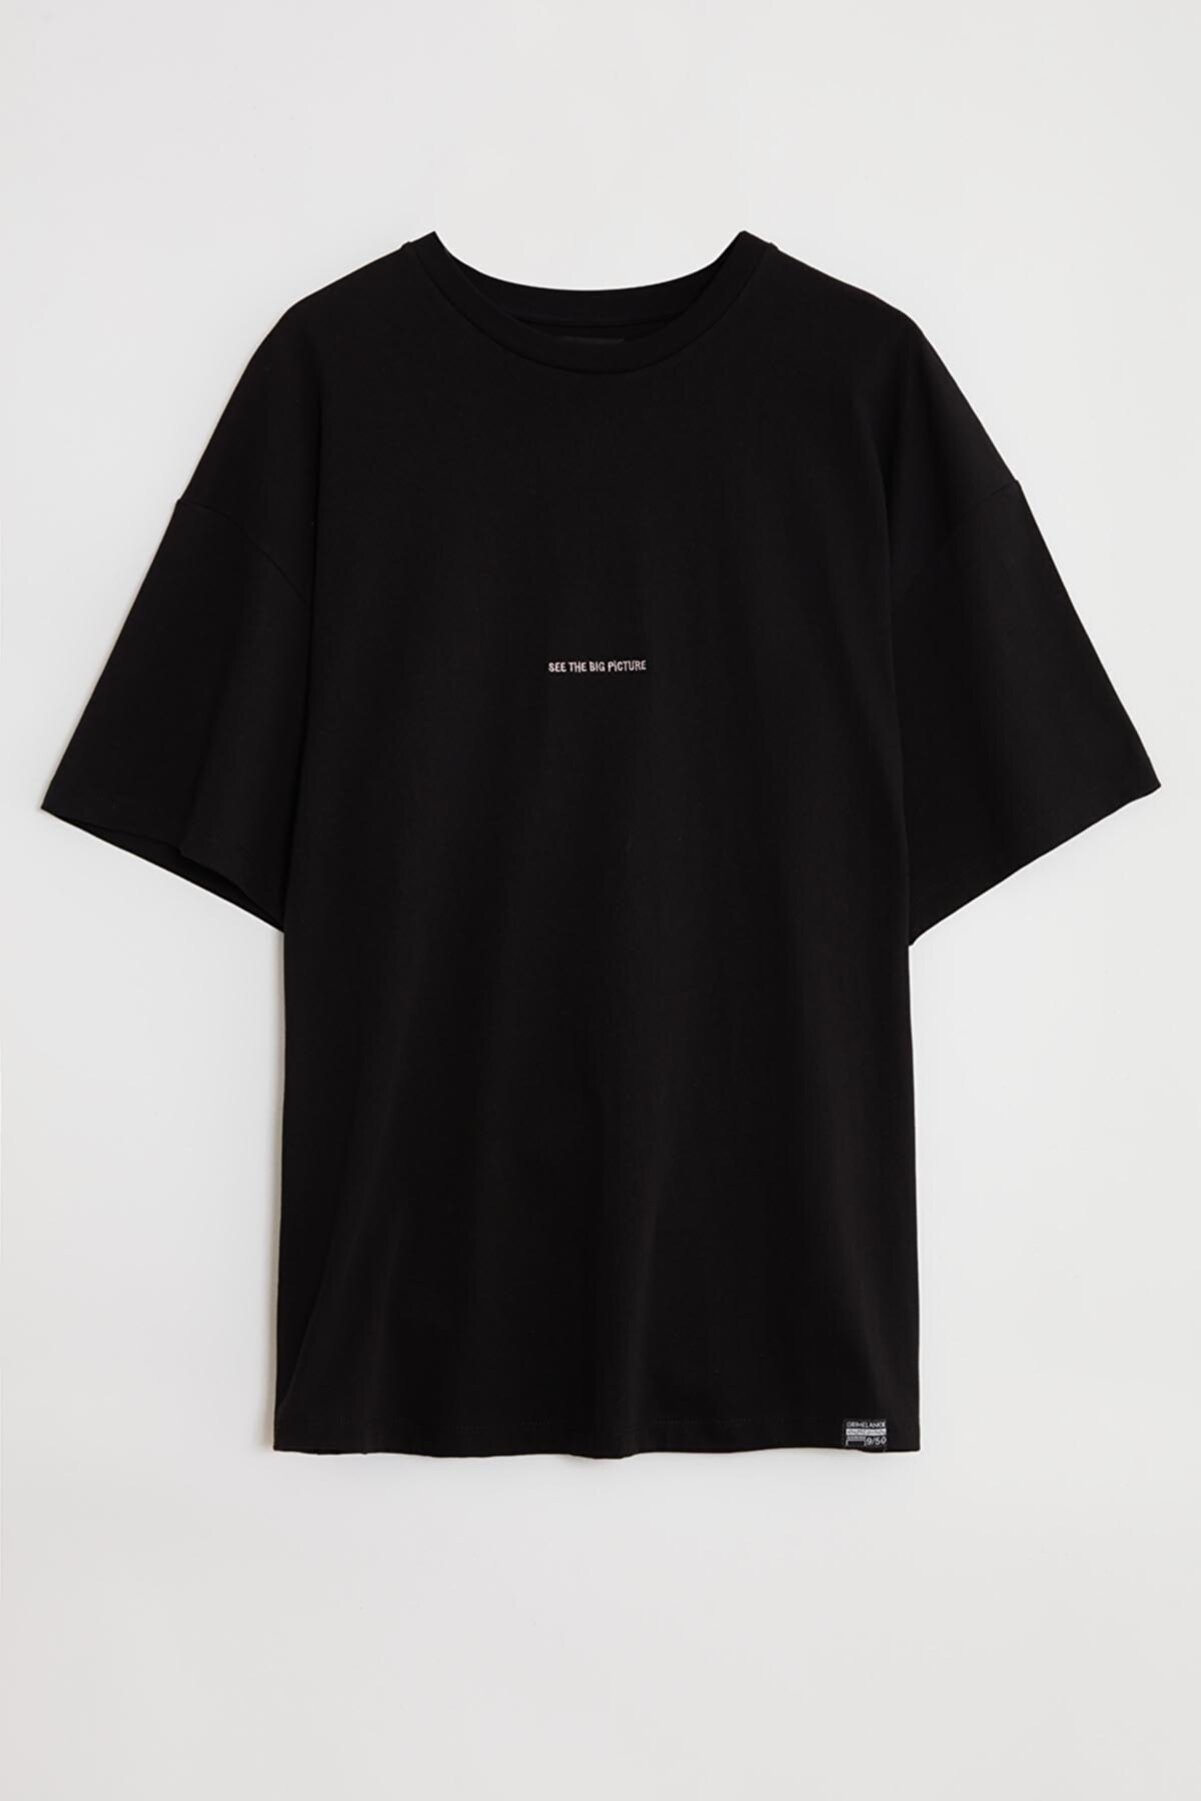 GRIMELANGE Rıver Erkek Siyah Nakışlı / Işlemeli Yuvarlak Yaka Oversize T-shirt